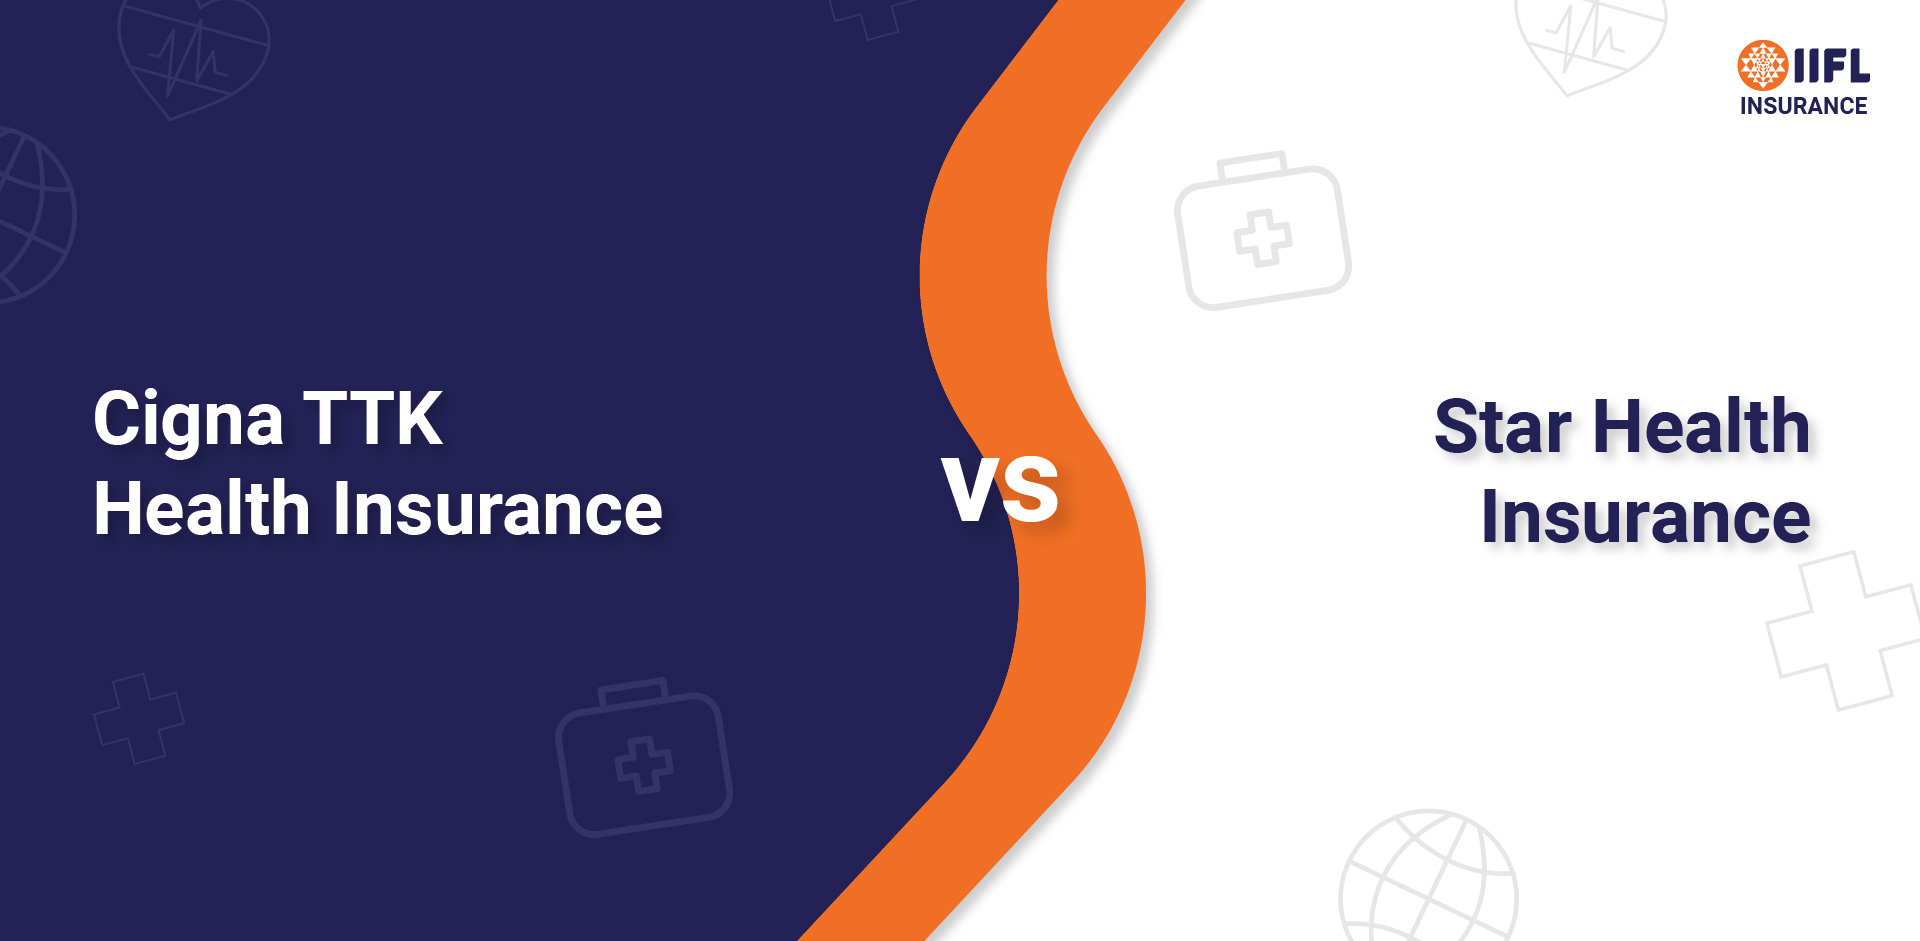 Cigna TTK Health Insurance vs Star Health Insurance